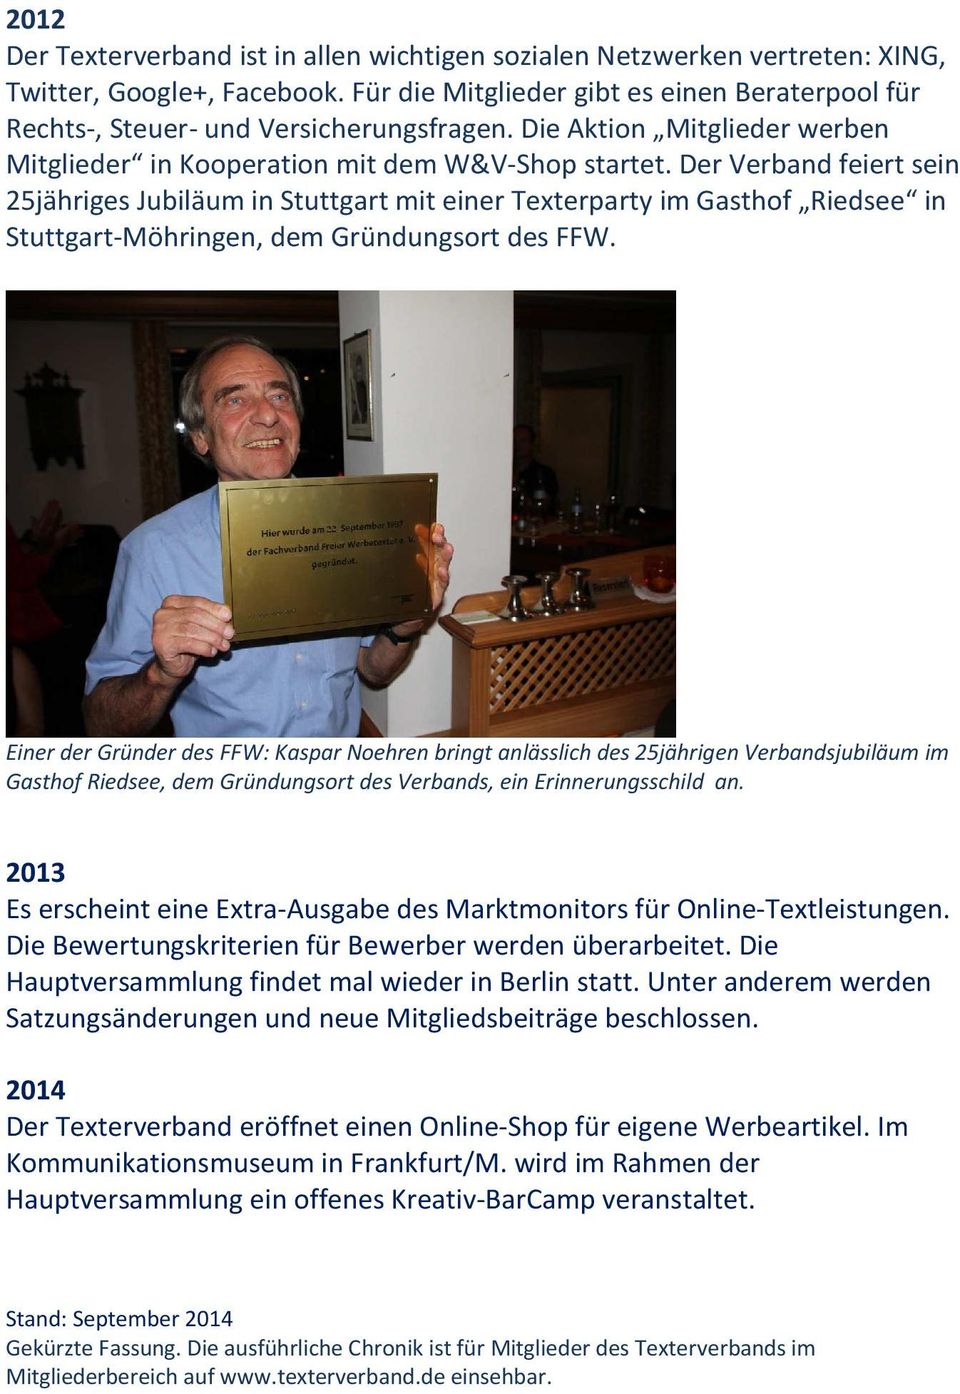 Der Verband feiert sein 25jähriges Jubiläum in Stuttgart mit einer Texterparty im Gasthof Riedsee in Stuttgart-Möhringen, dem Gründungsort des FFW.